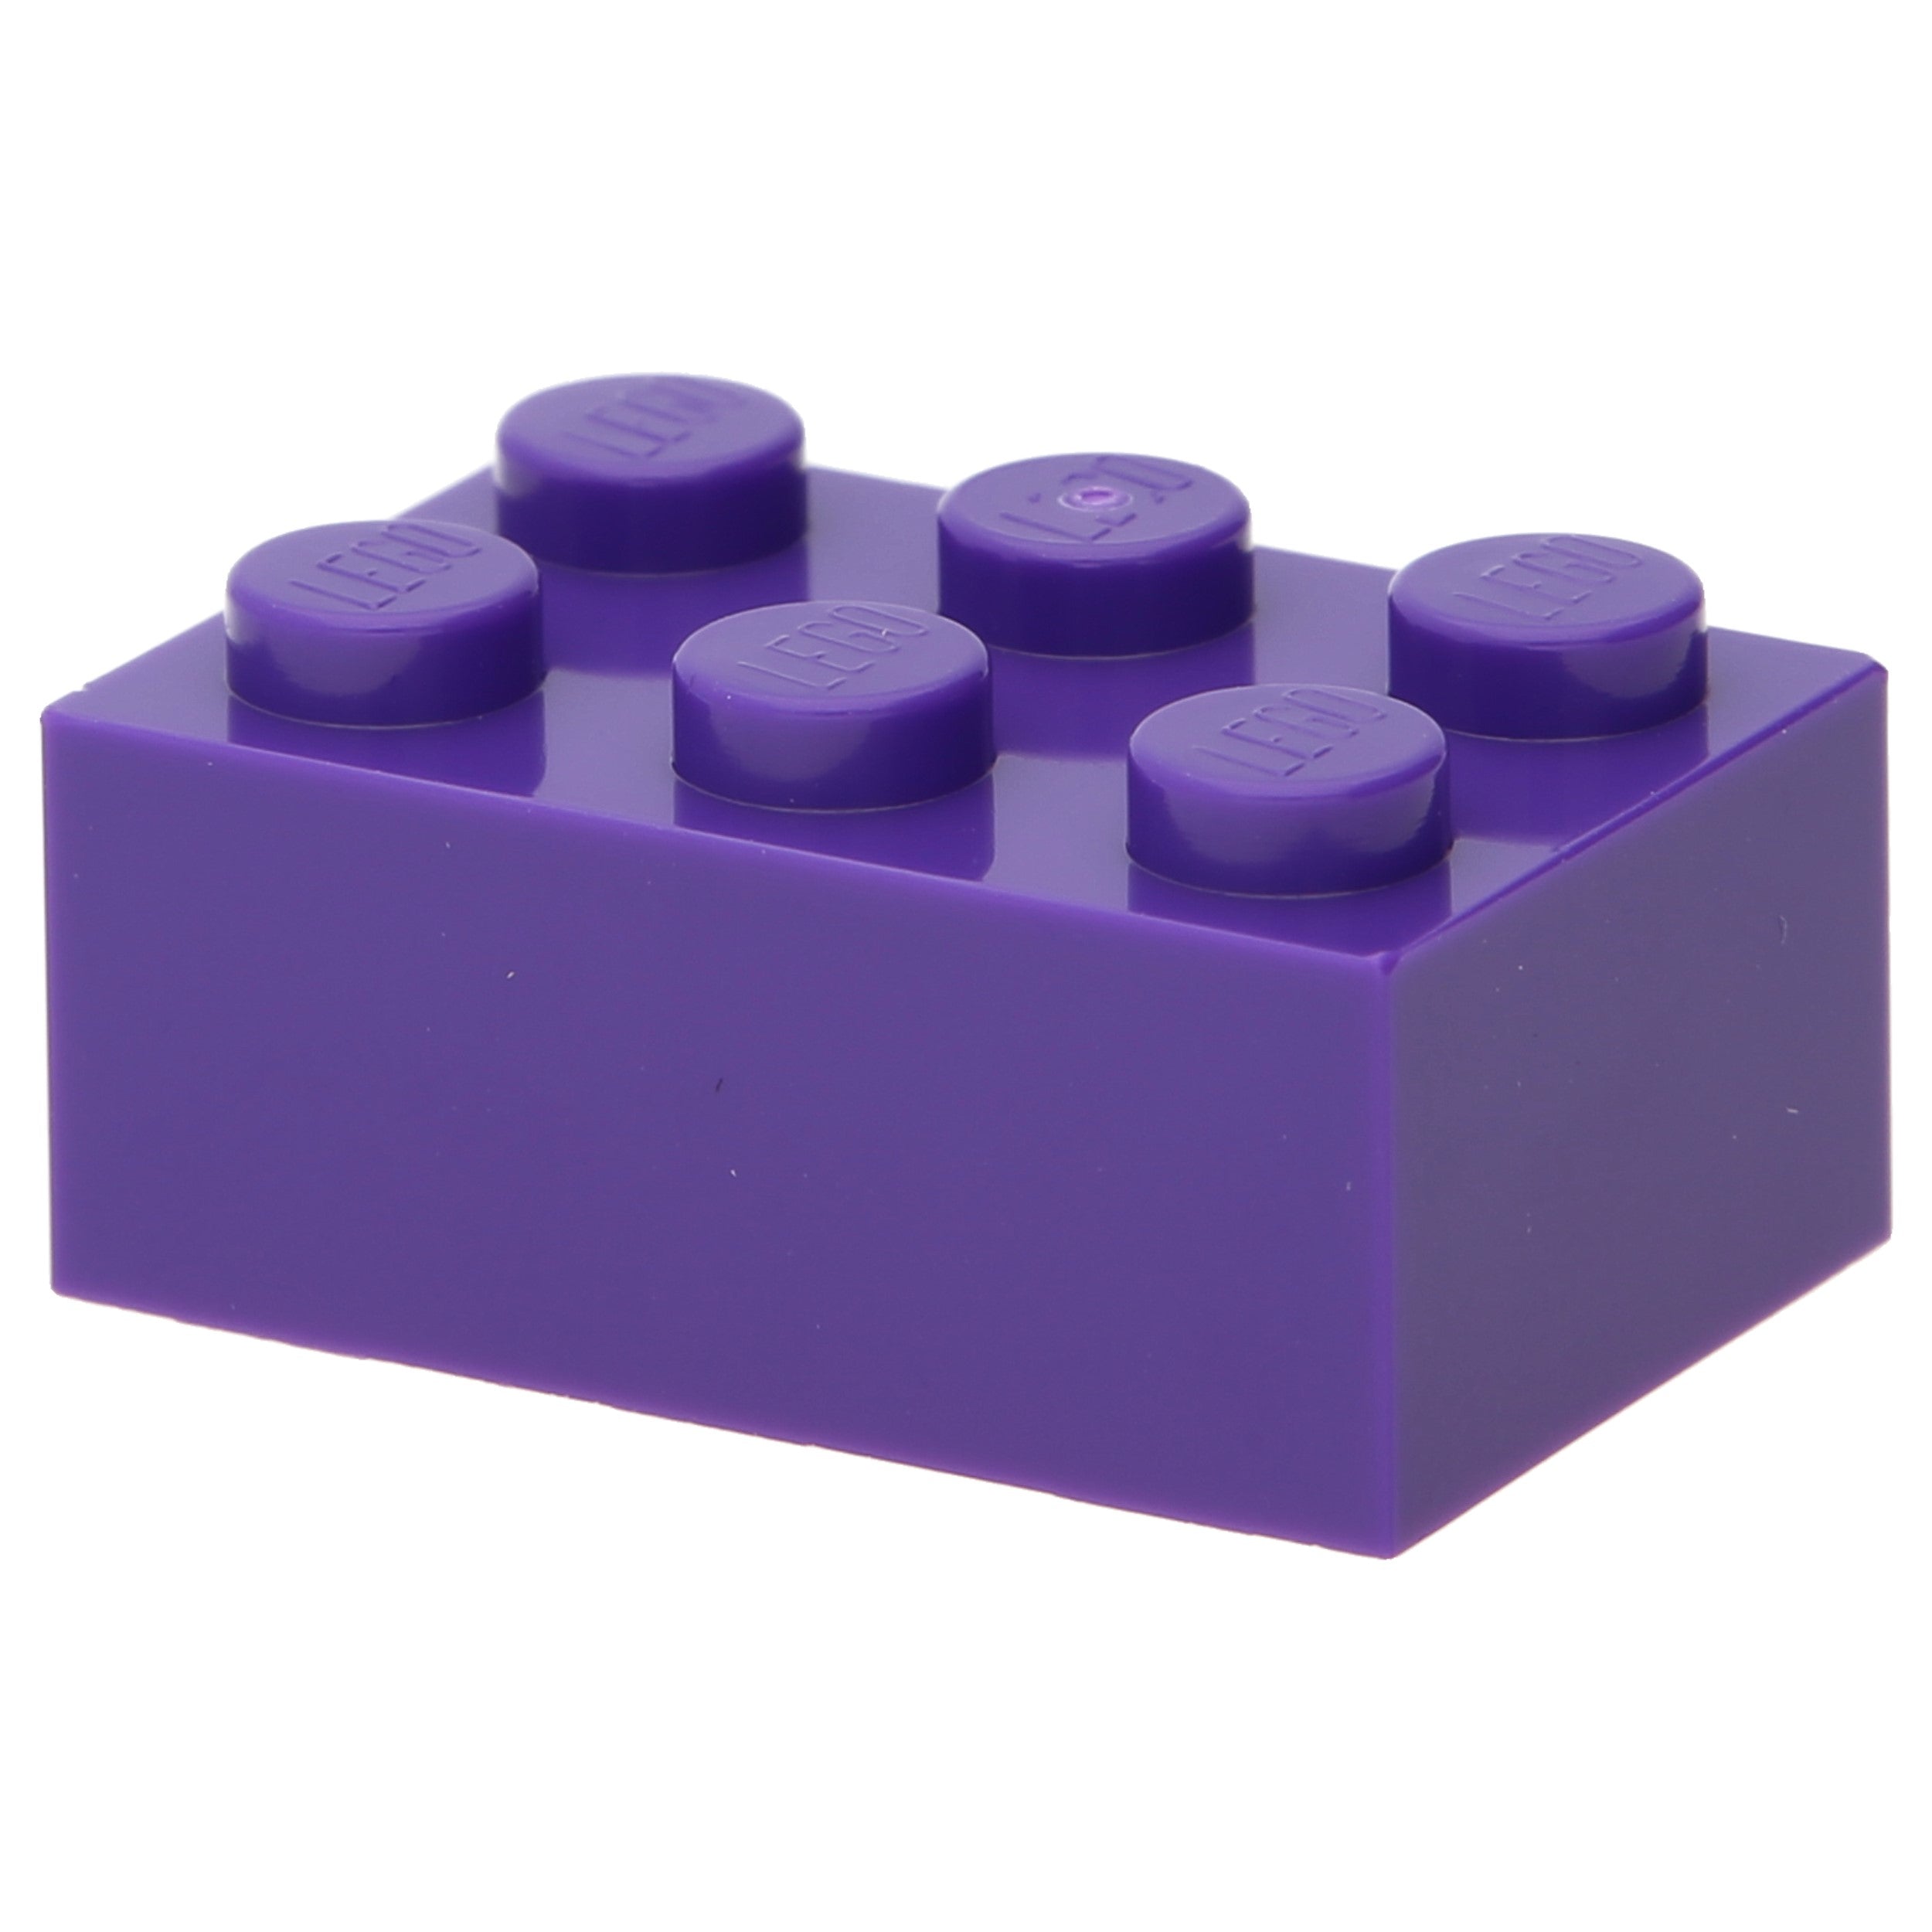 LEGO stone (standard) - stone 2 x 3